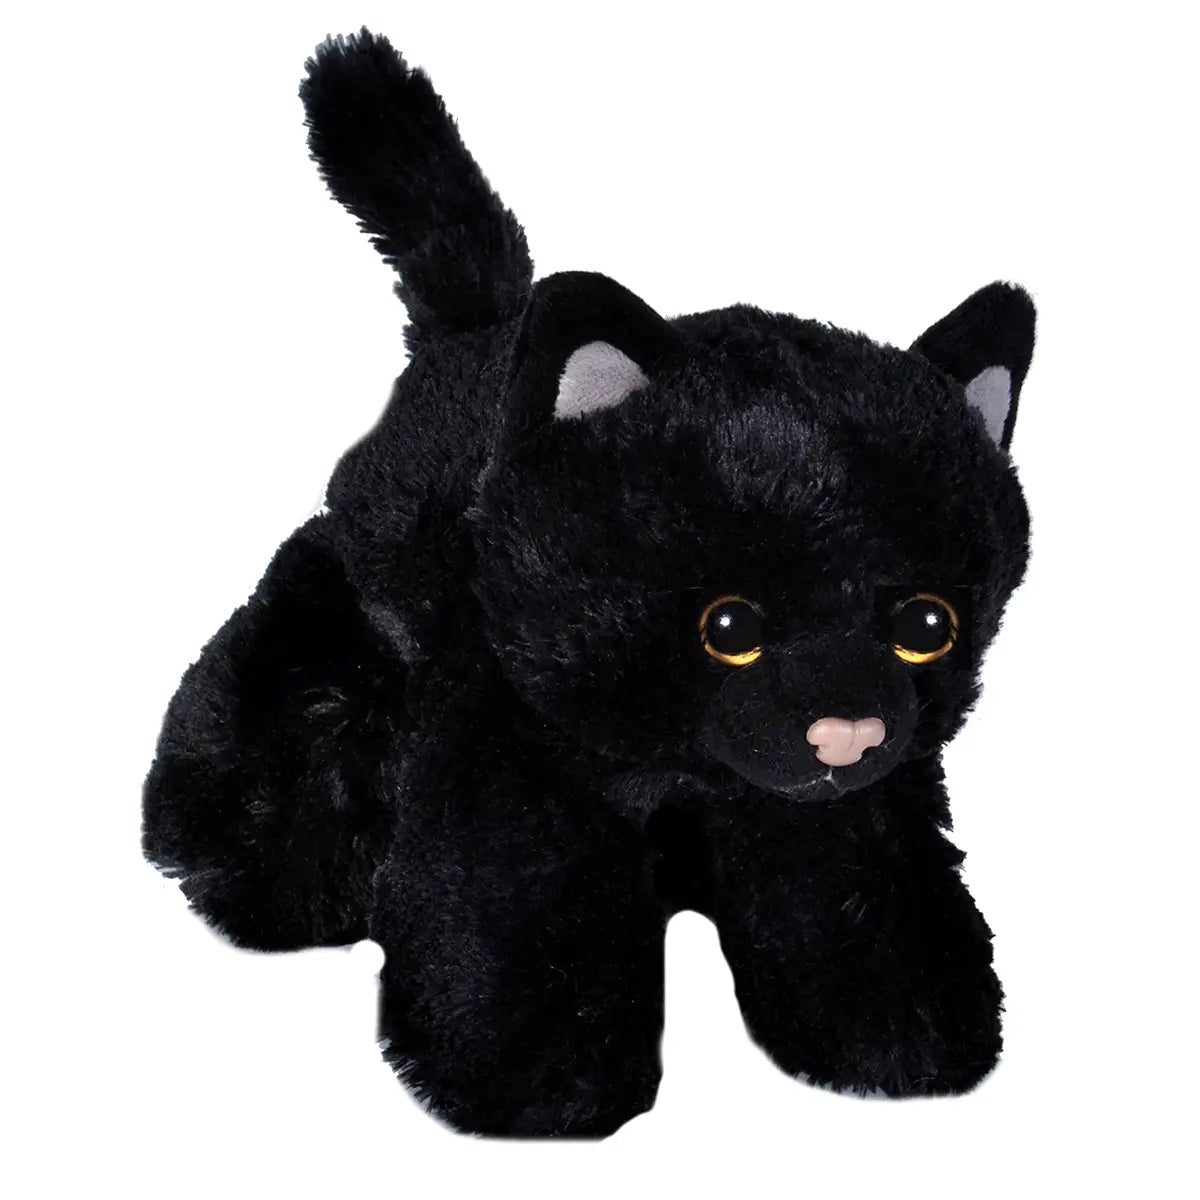 Hug'Ems-Mini Black Cat Stuffed Animal 7"